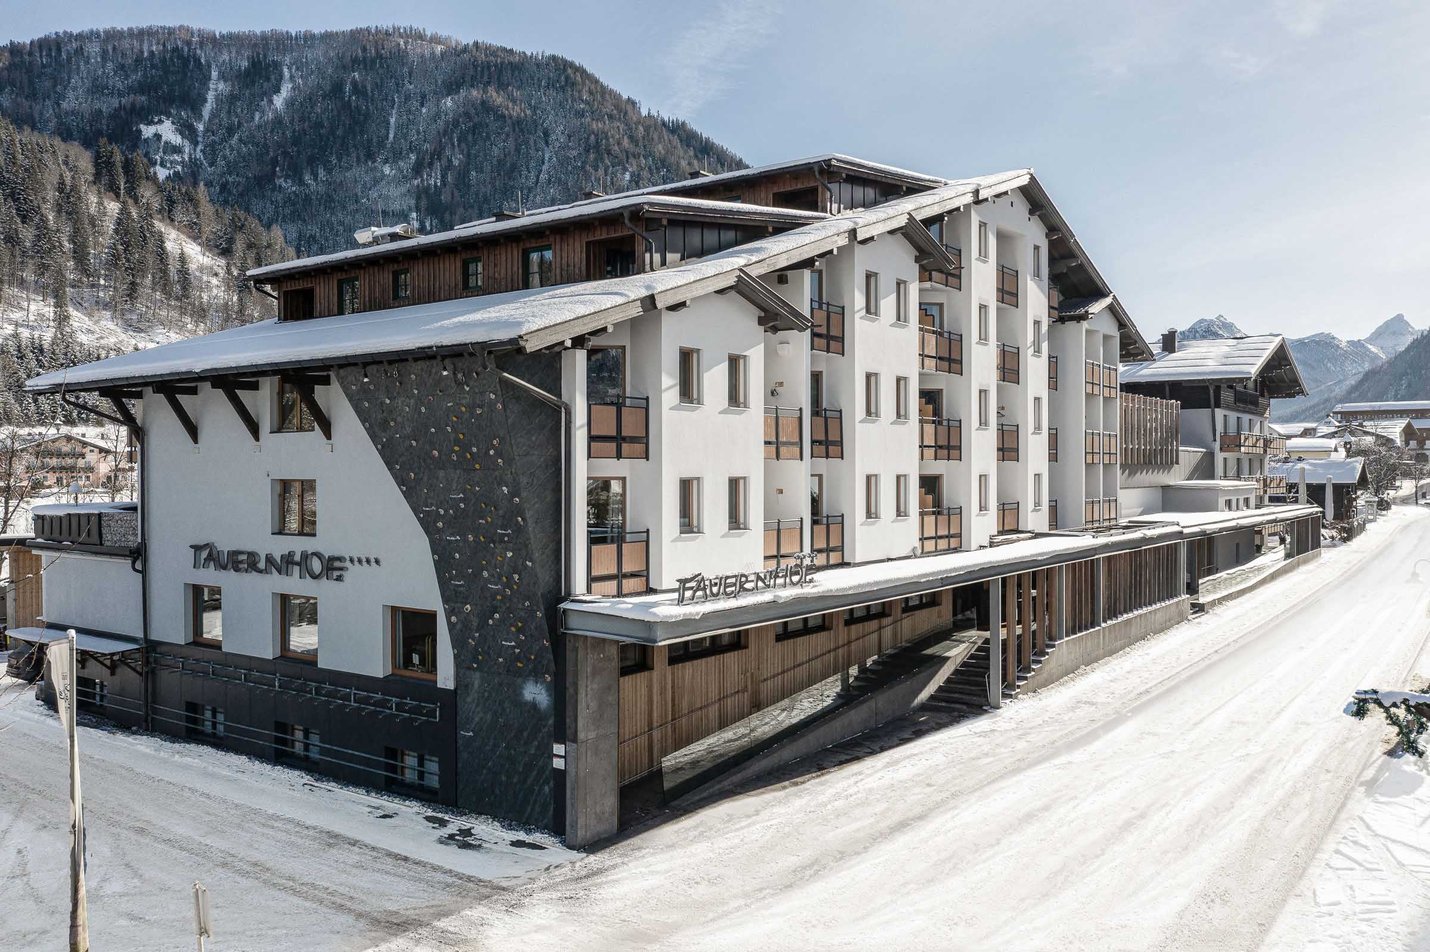 Tauernhof Hotel in Flachau in winter 